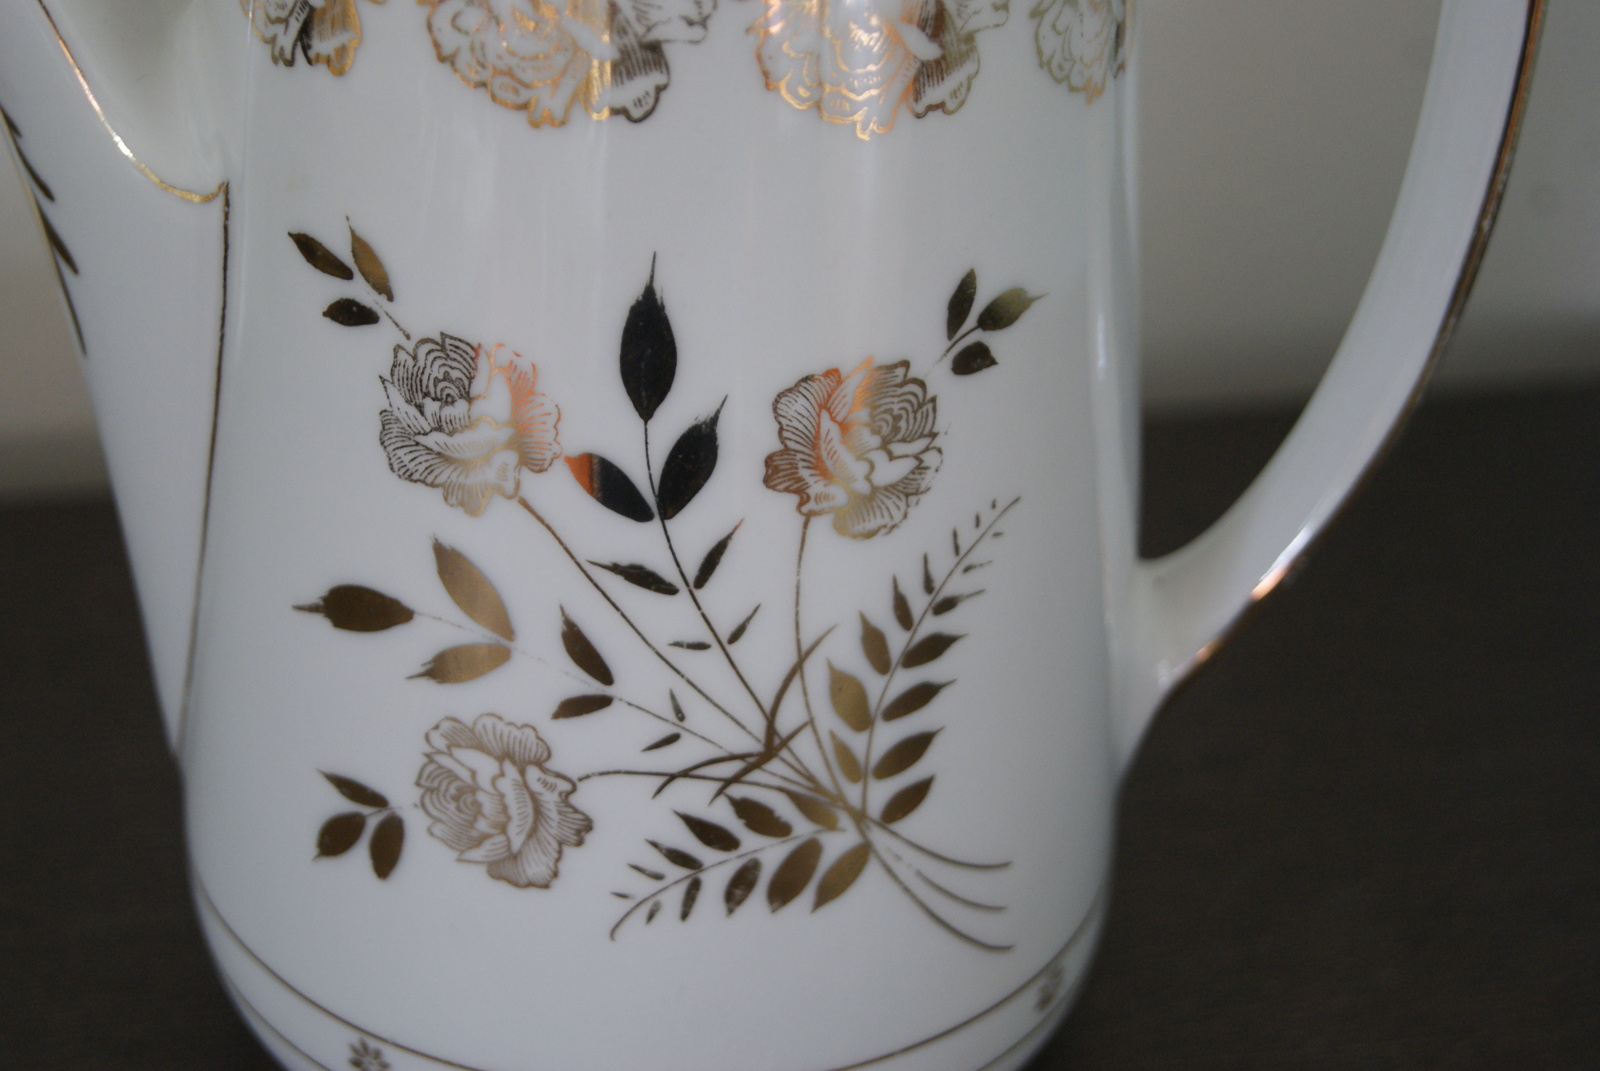 Jaworzyna Slaska (Konigszelt) kaffekanne med gull dekor og gyldne roser